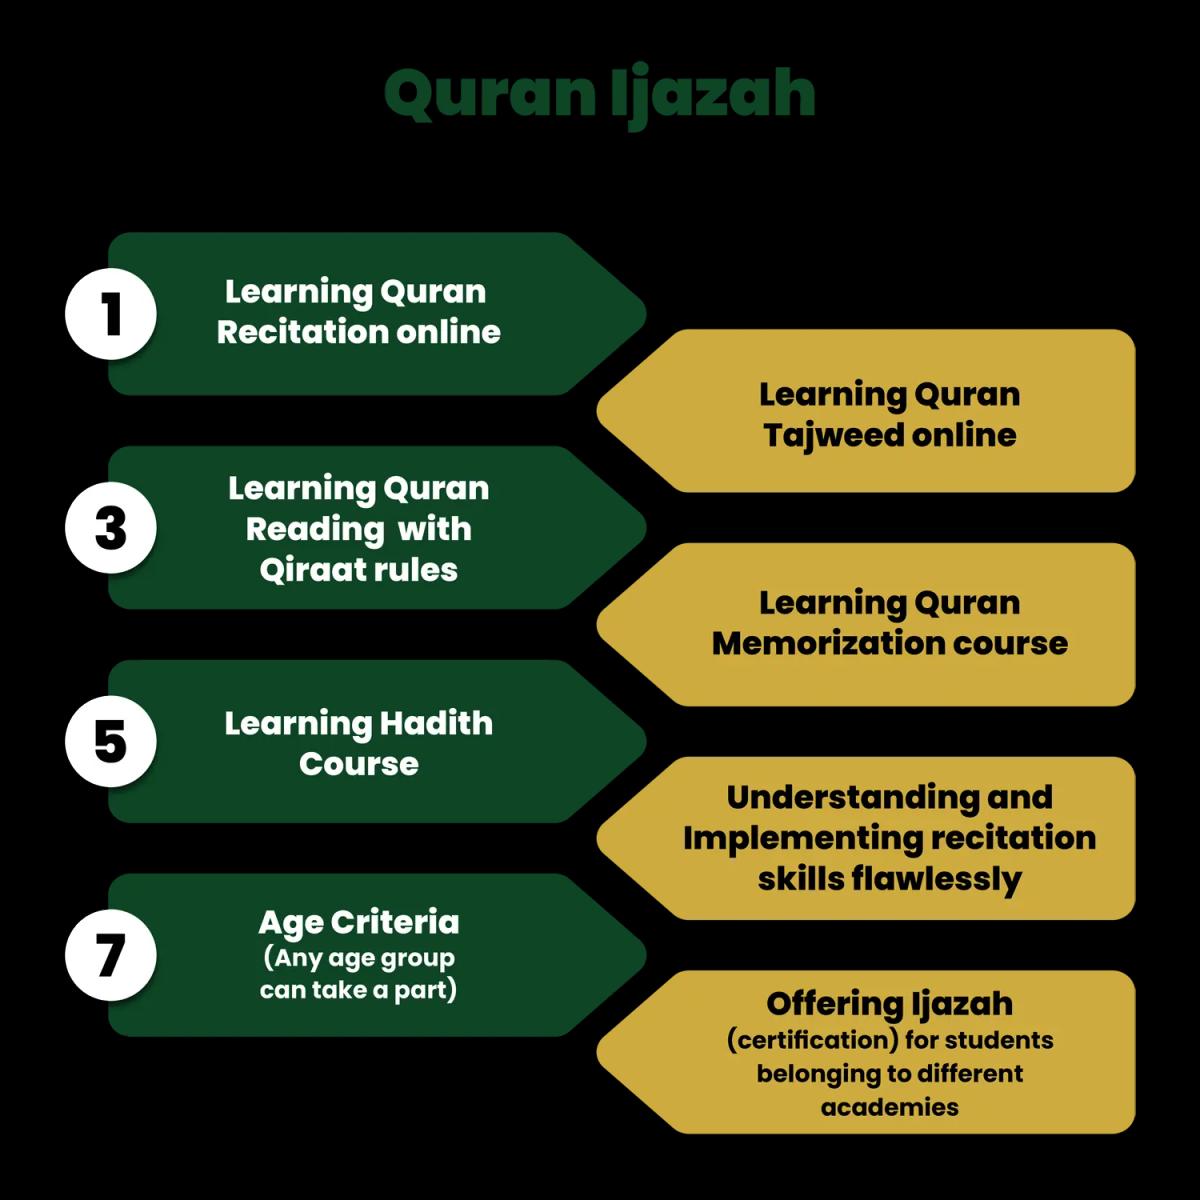 Quran ijazah certification